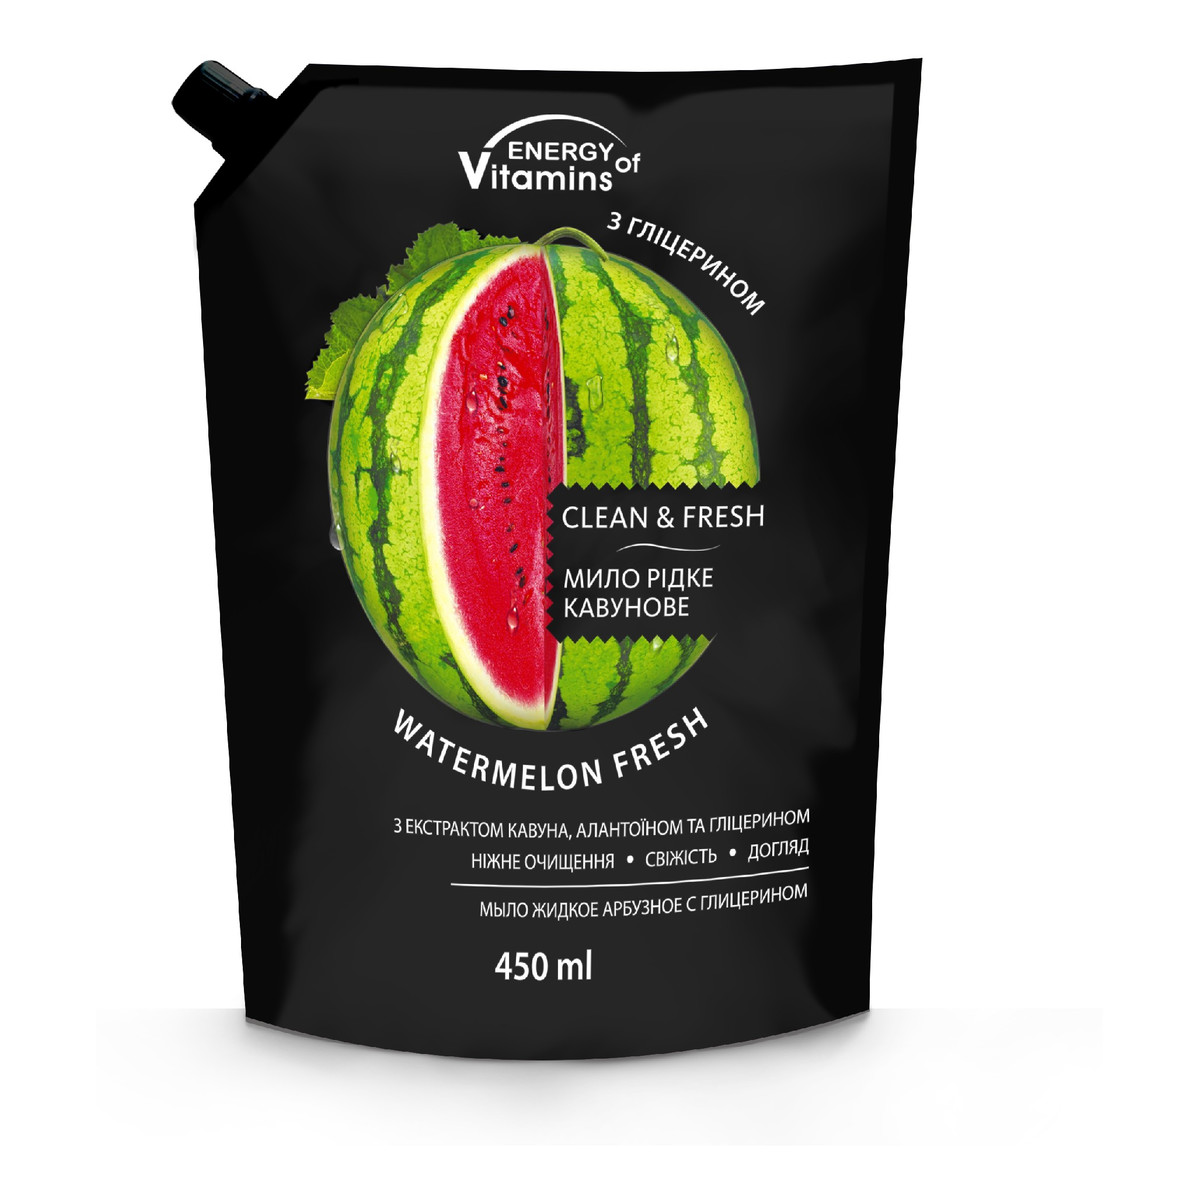 Energy of Vitamins Mydło w płynie Watermelon Fresh - uzupełnienie 450ml